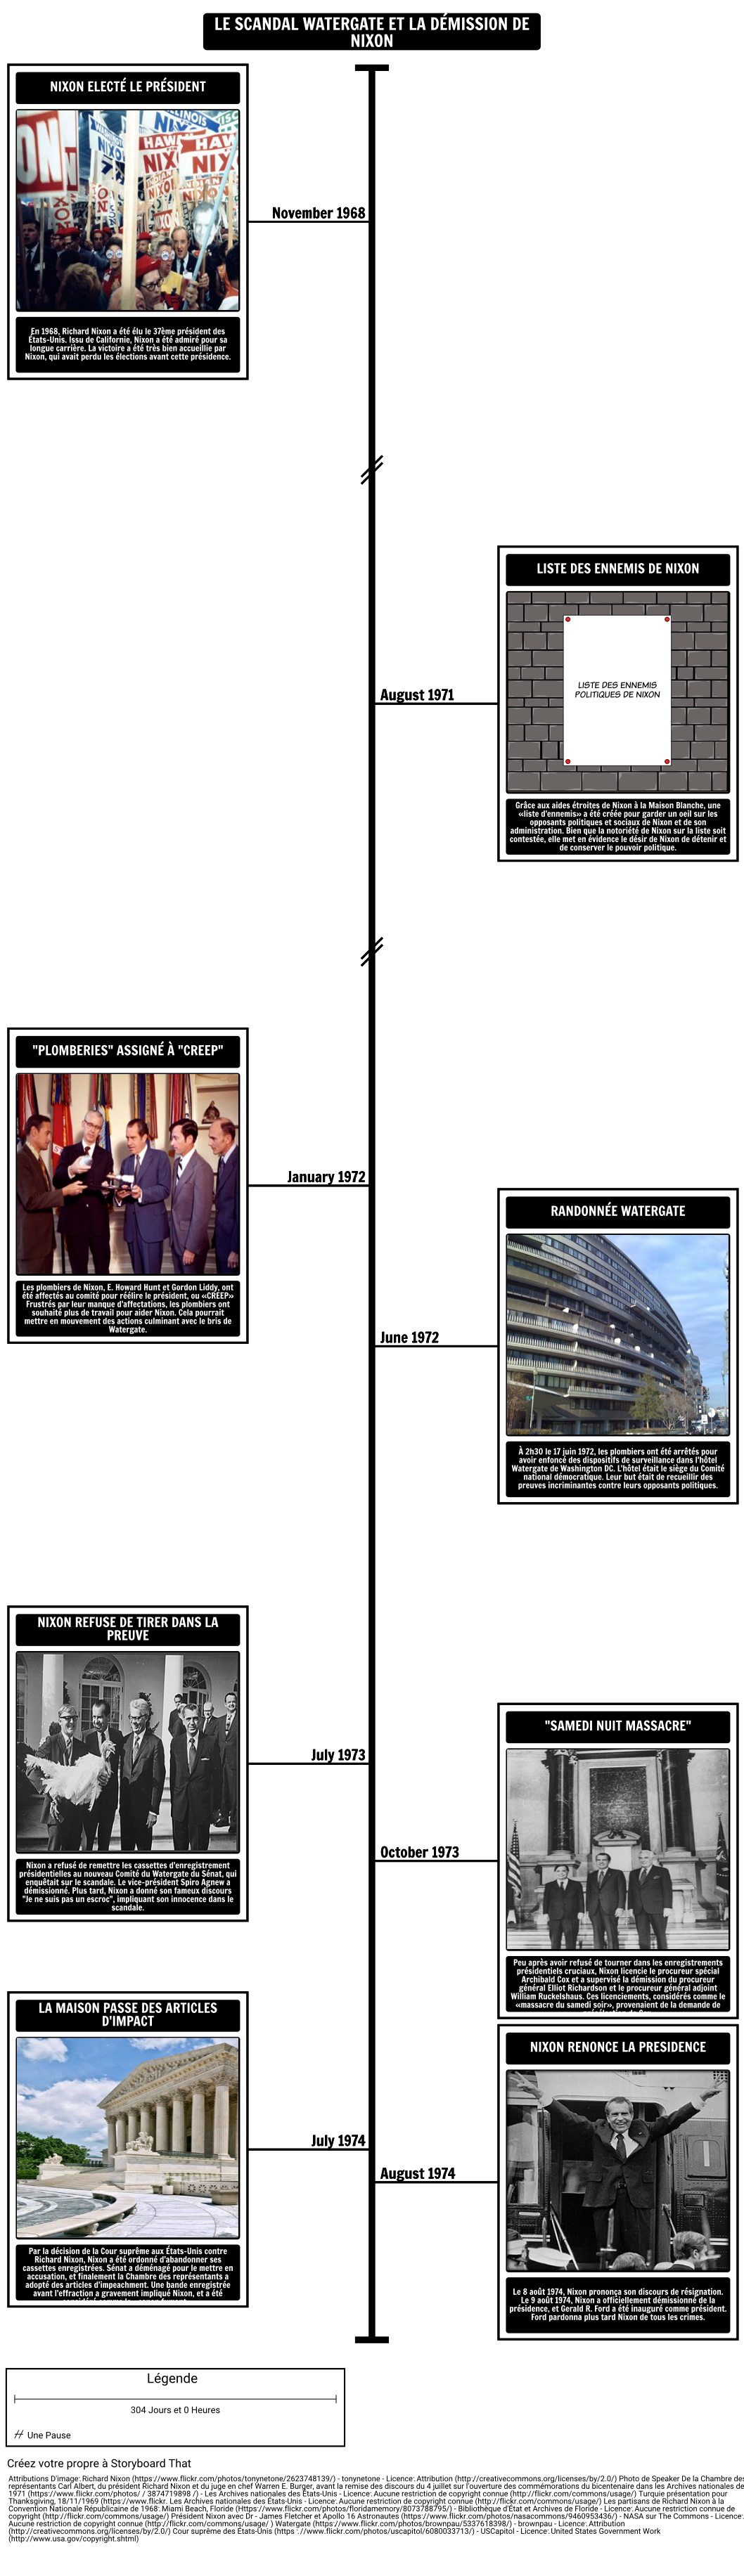 Chronologie du Scandale de Watergate et Démission de Nixon